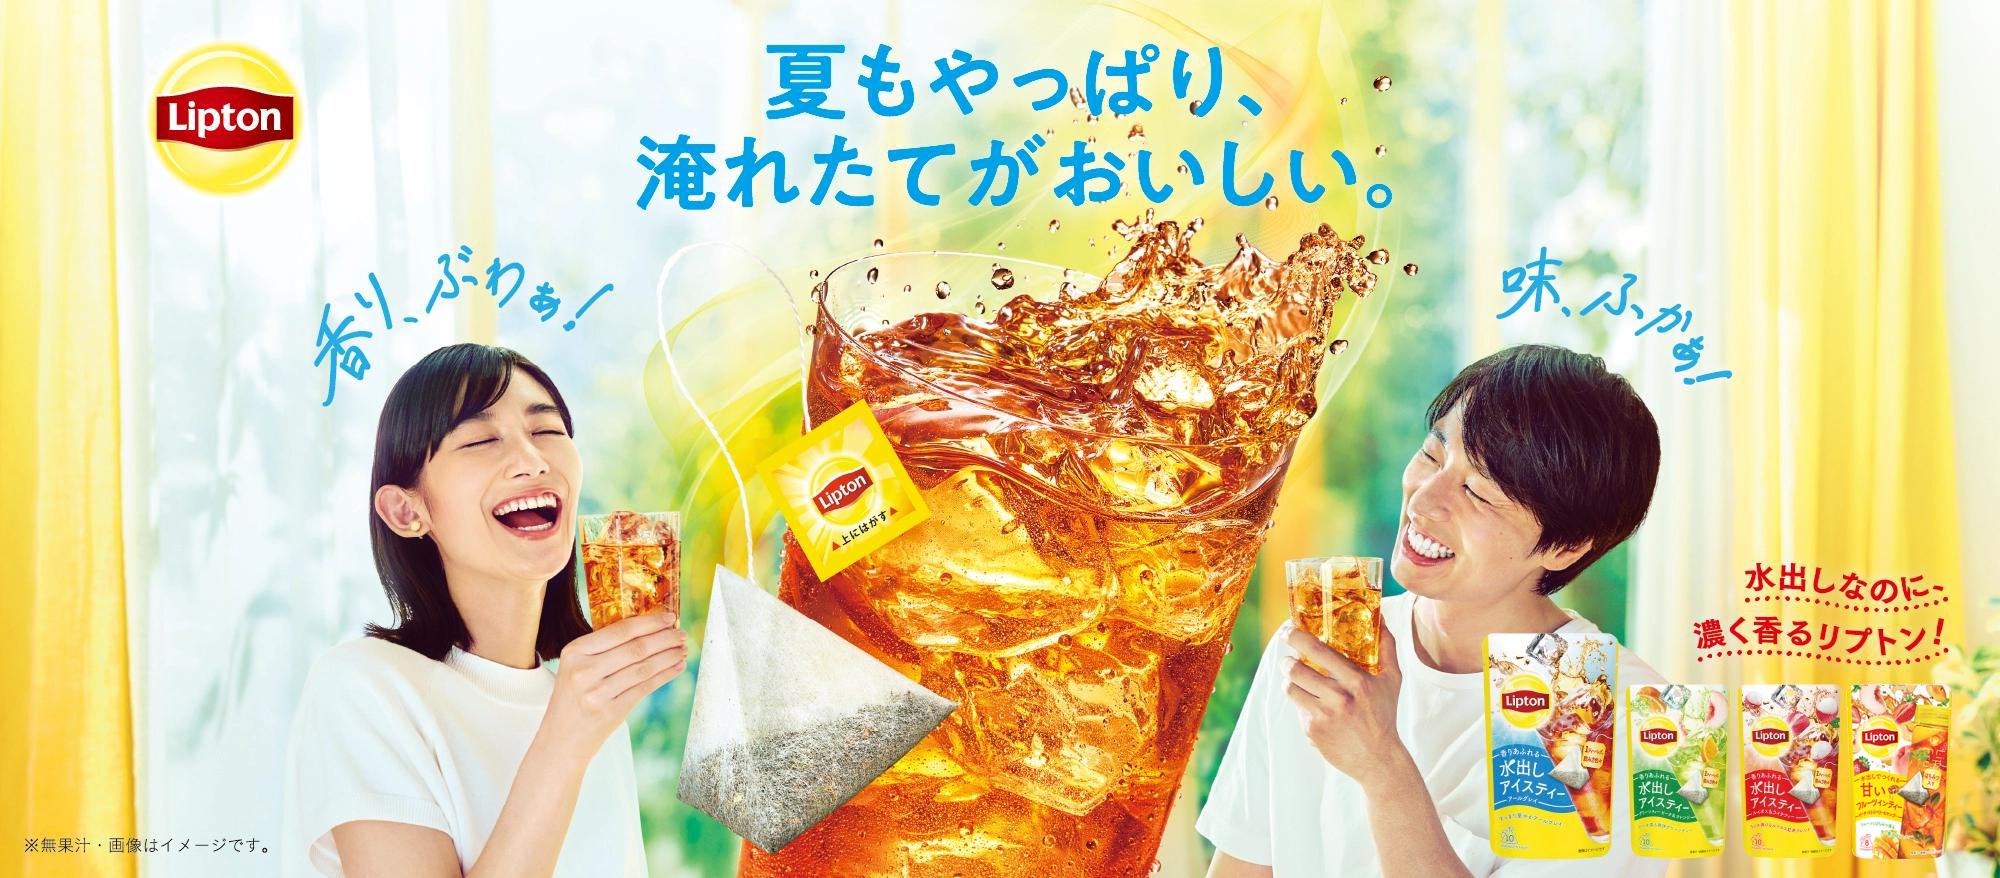 Cold Brew | Lipton Japan